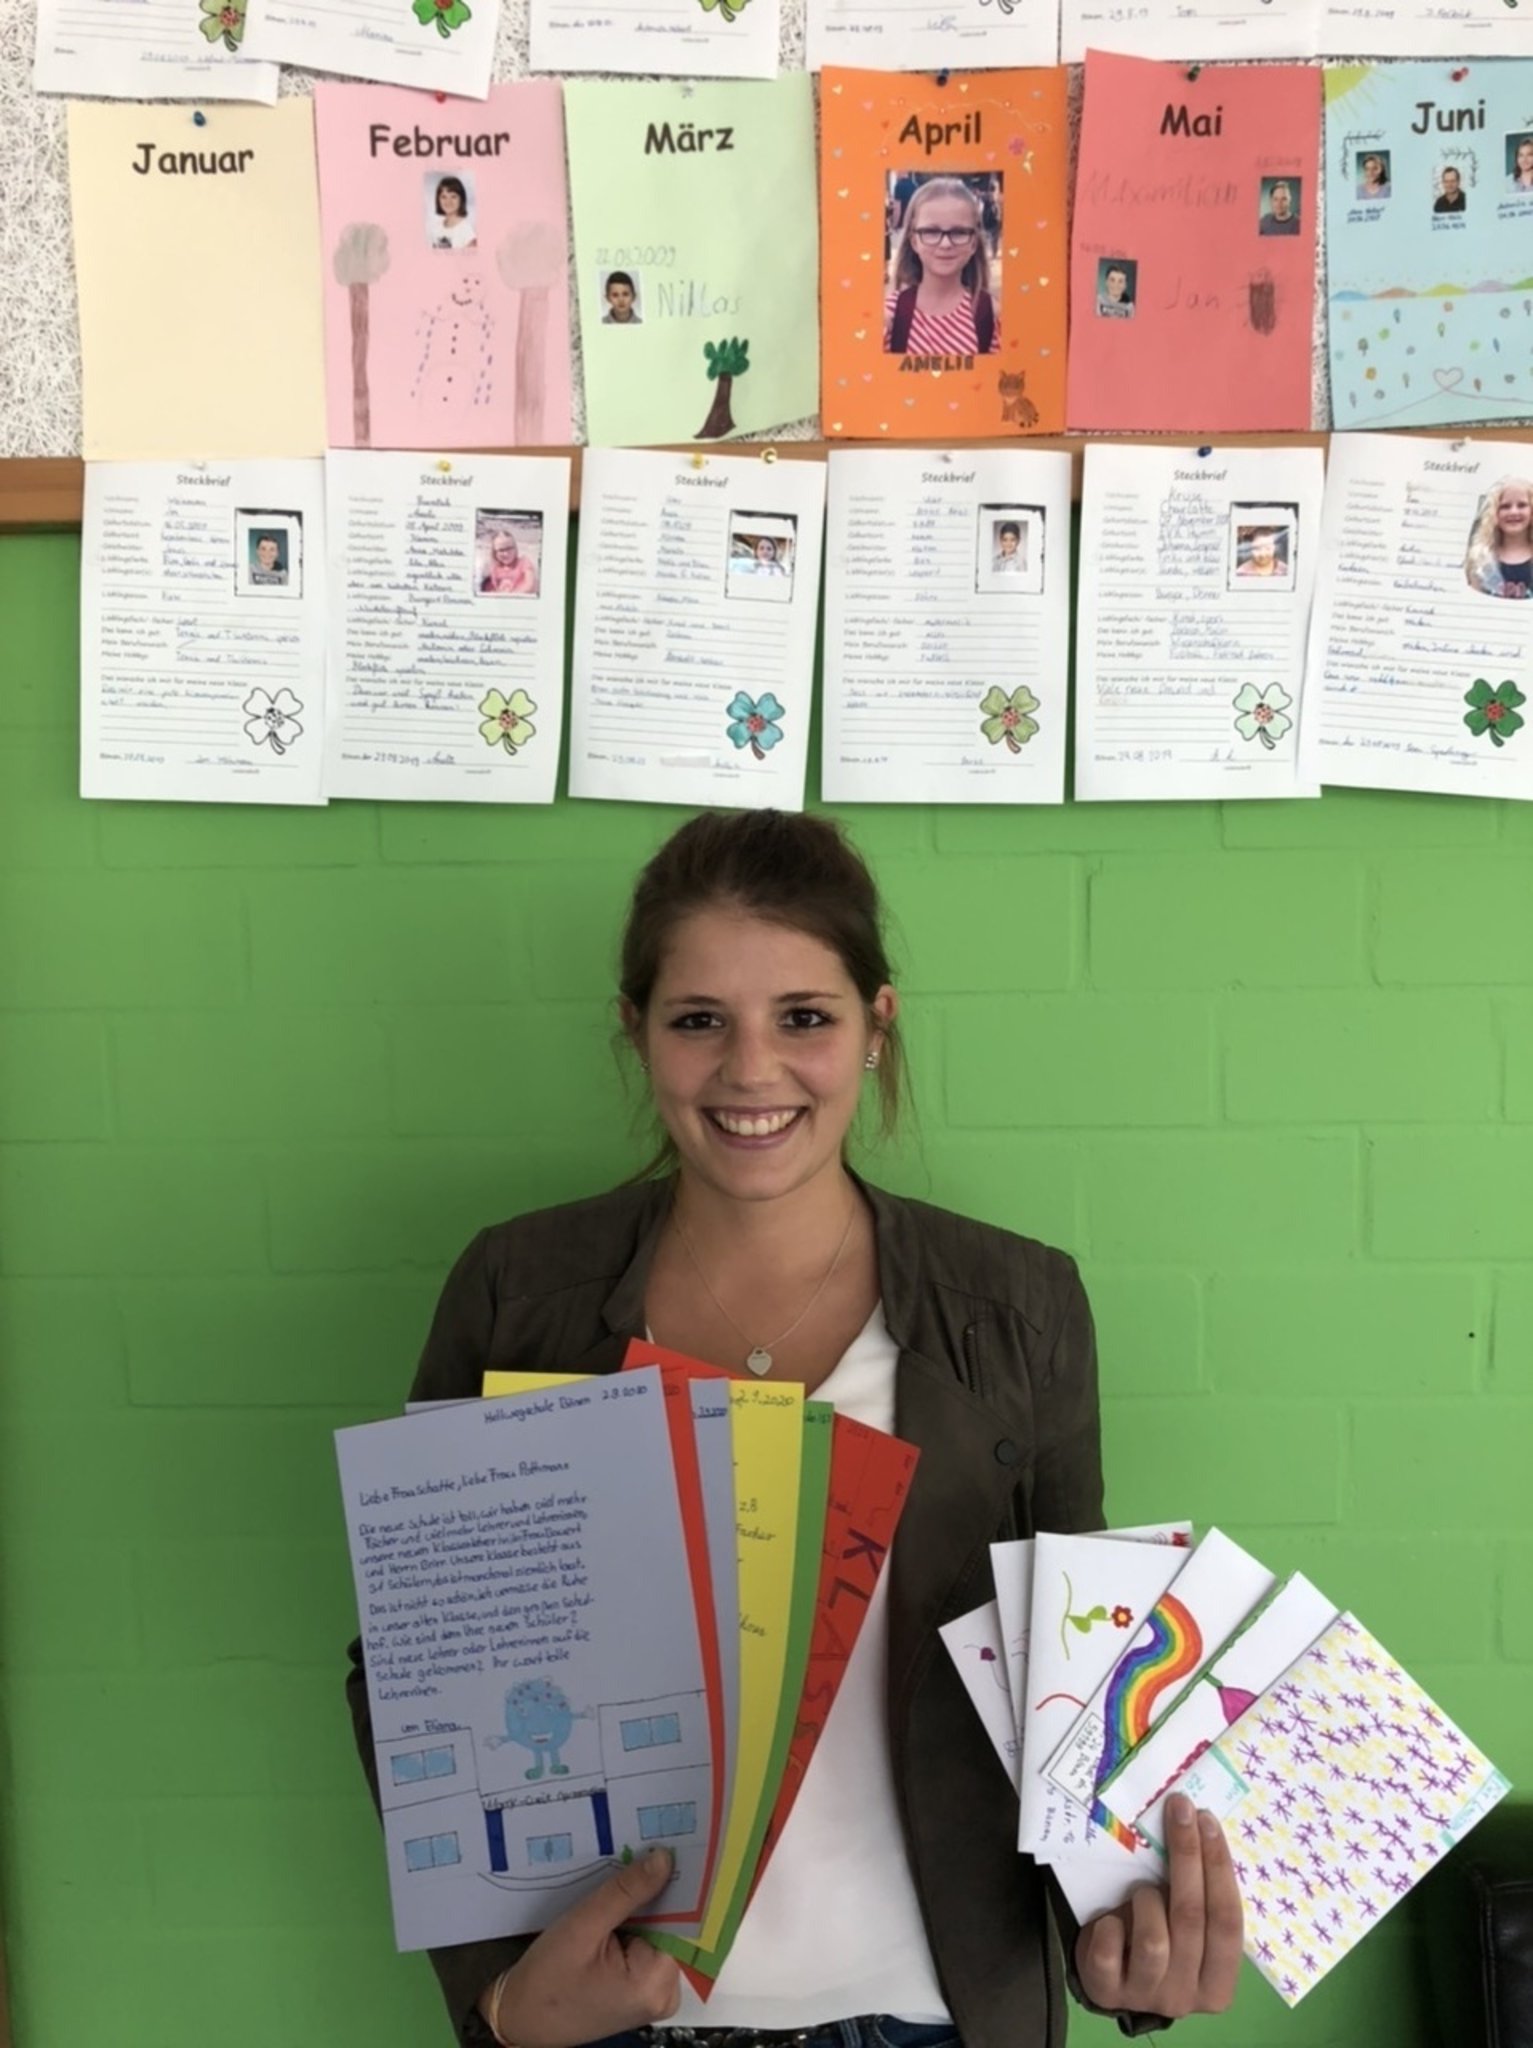 Ganz analog: Briefe an die Grundschule – Ein Briefprojekt am Marie-Curie-Gymnasium